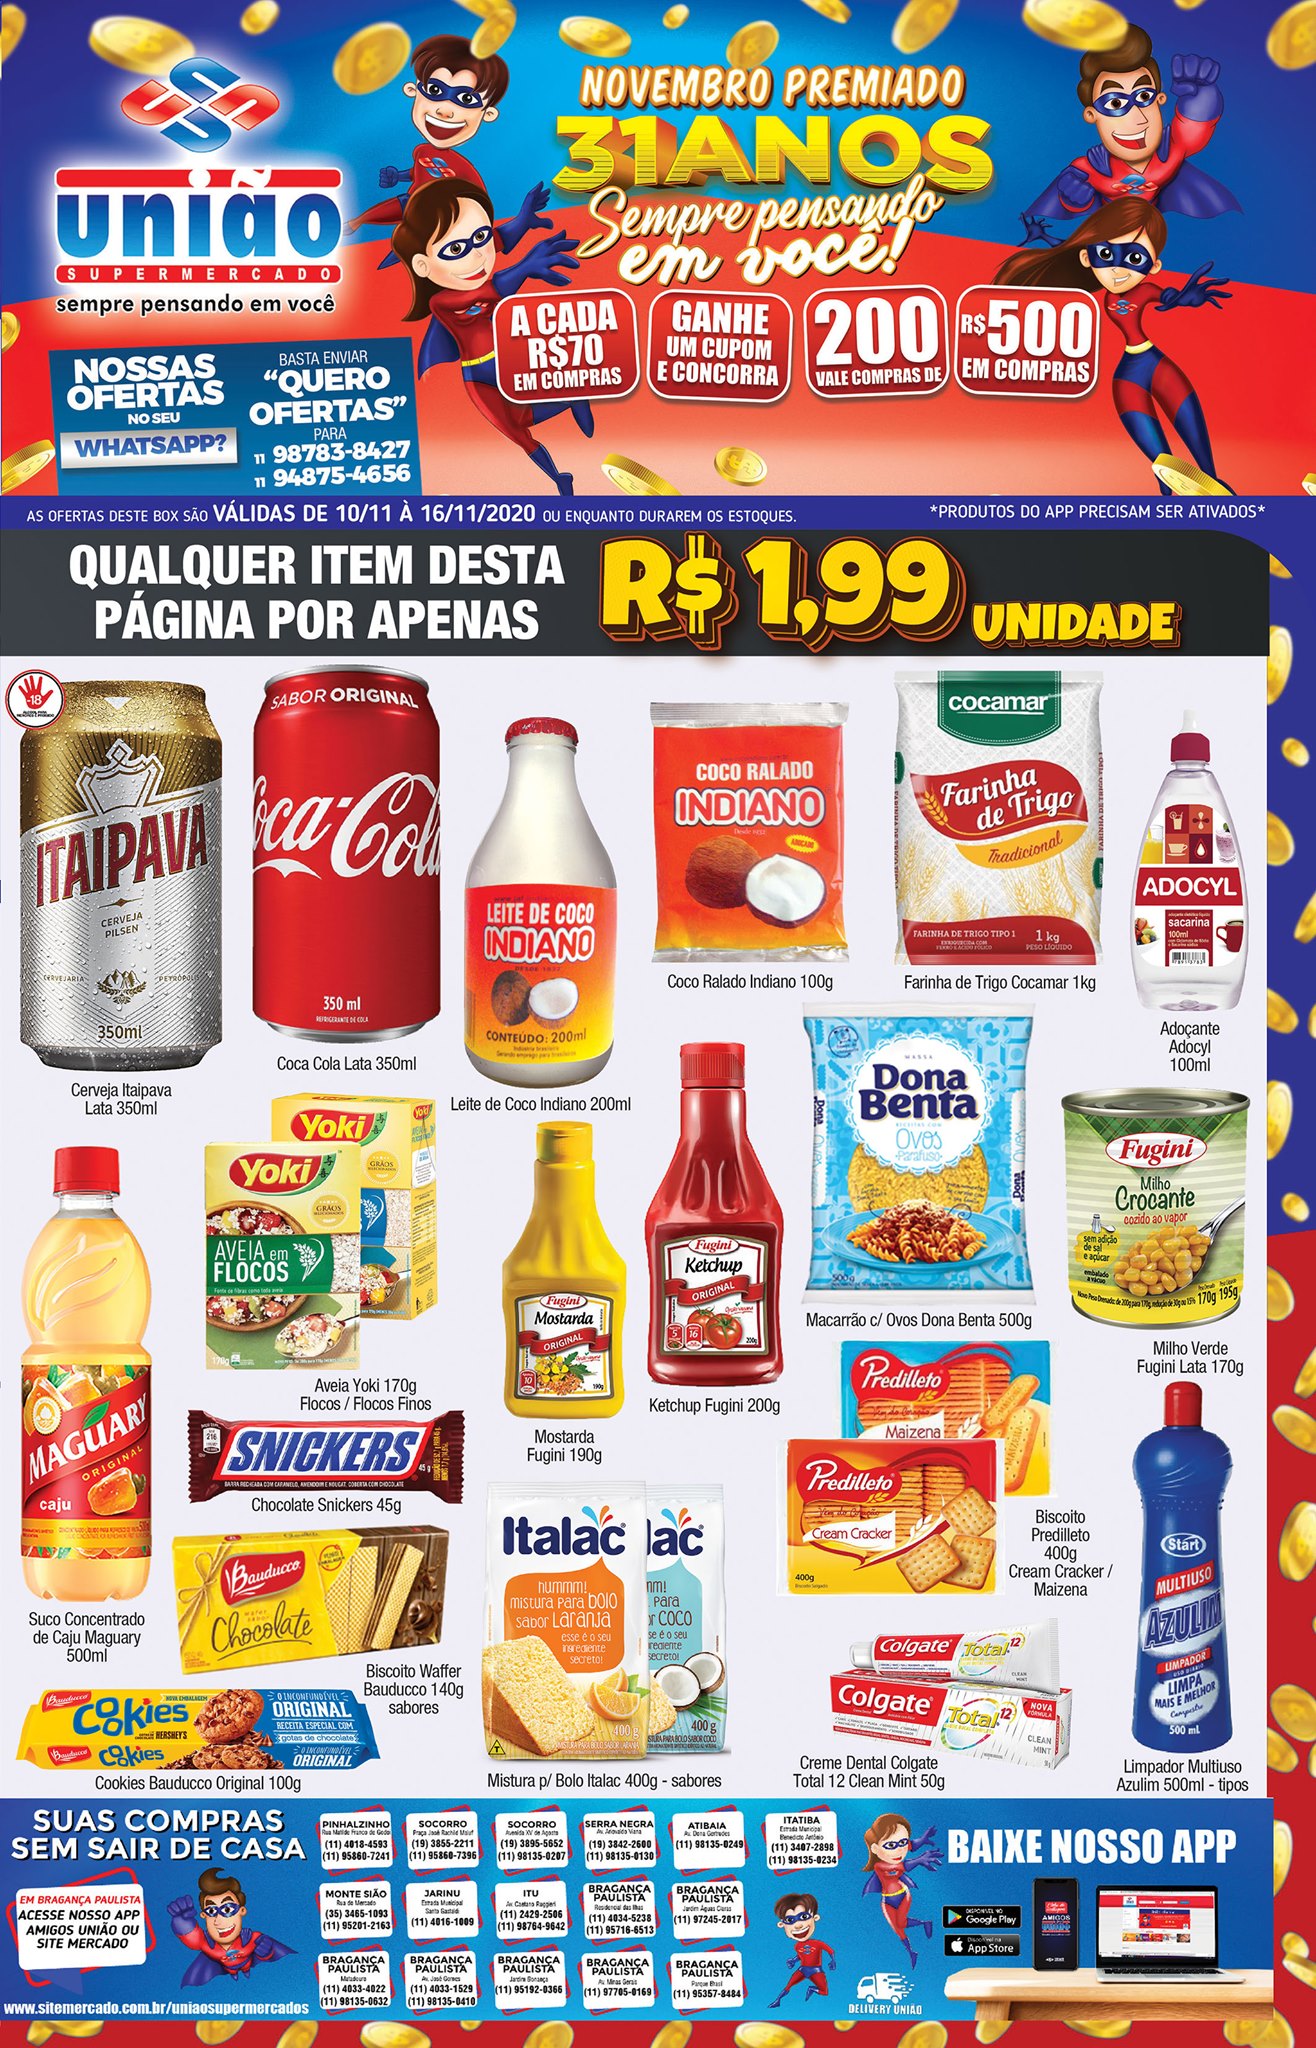 União Supermercados tem mais de 20 ofertas a R$1,99, nesta semana